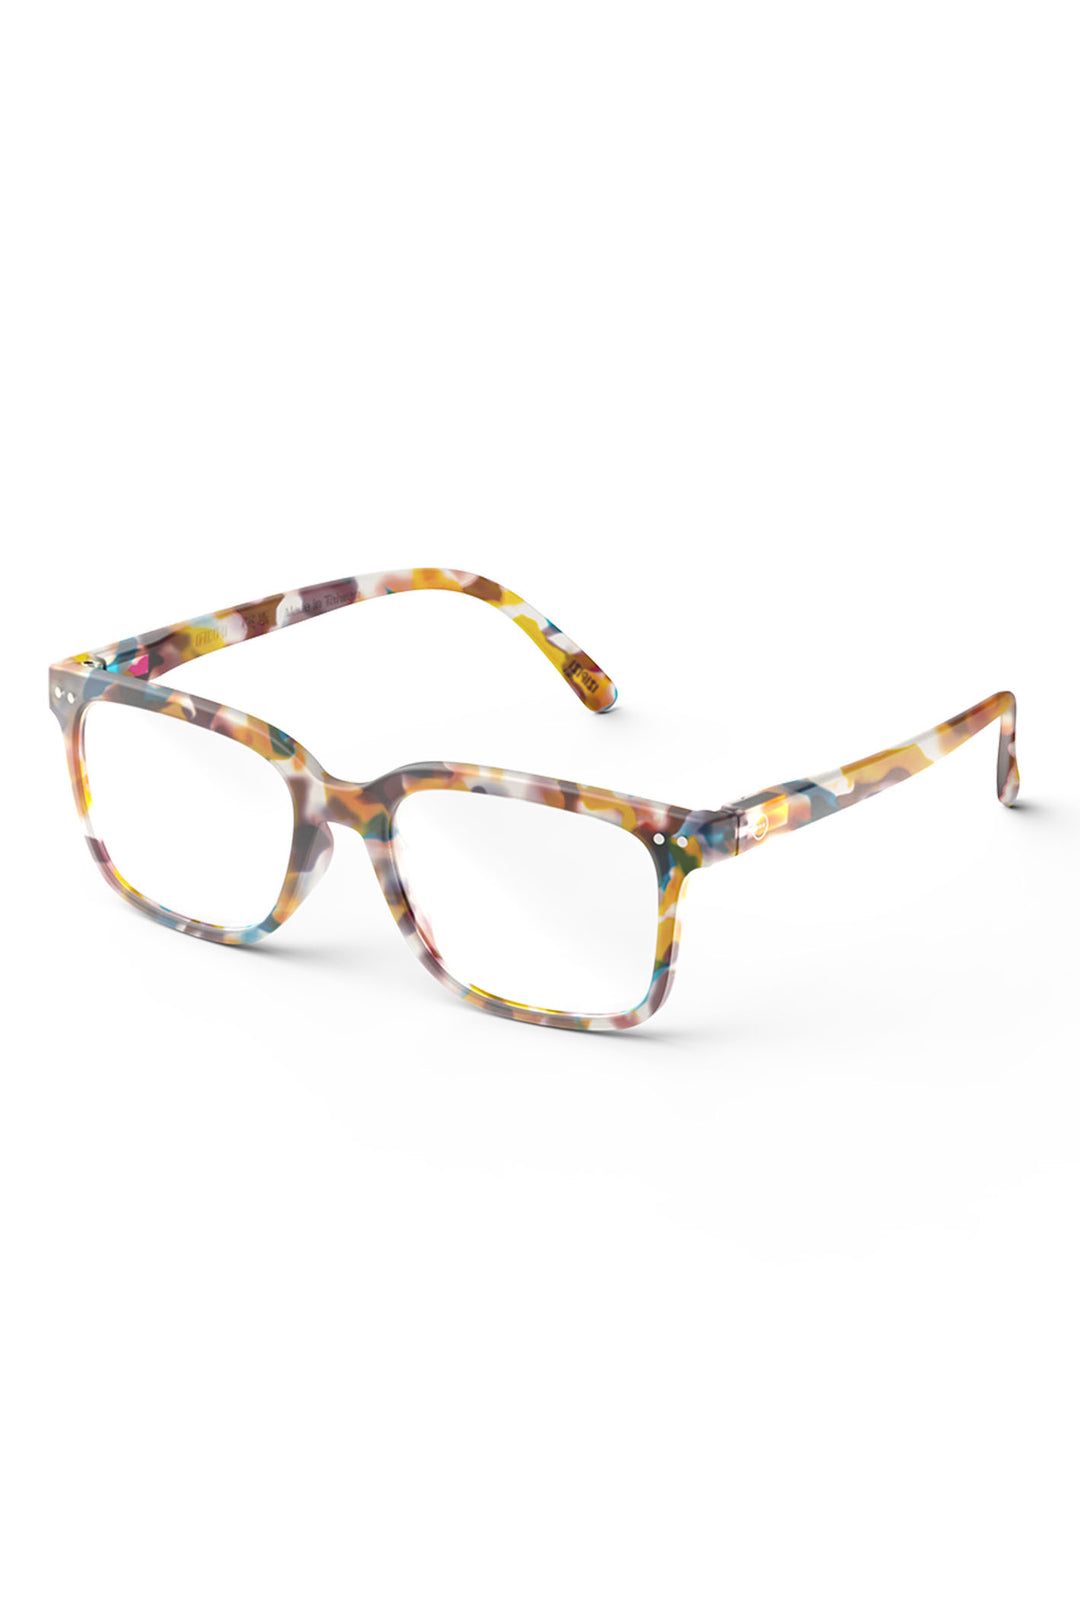 Izipizi Paris LMSLC18 Blue Tortoise Pattern Reading Glasses - Olivia Grace Fashion